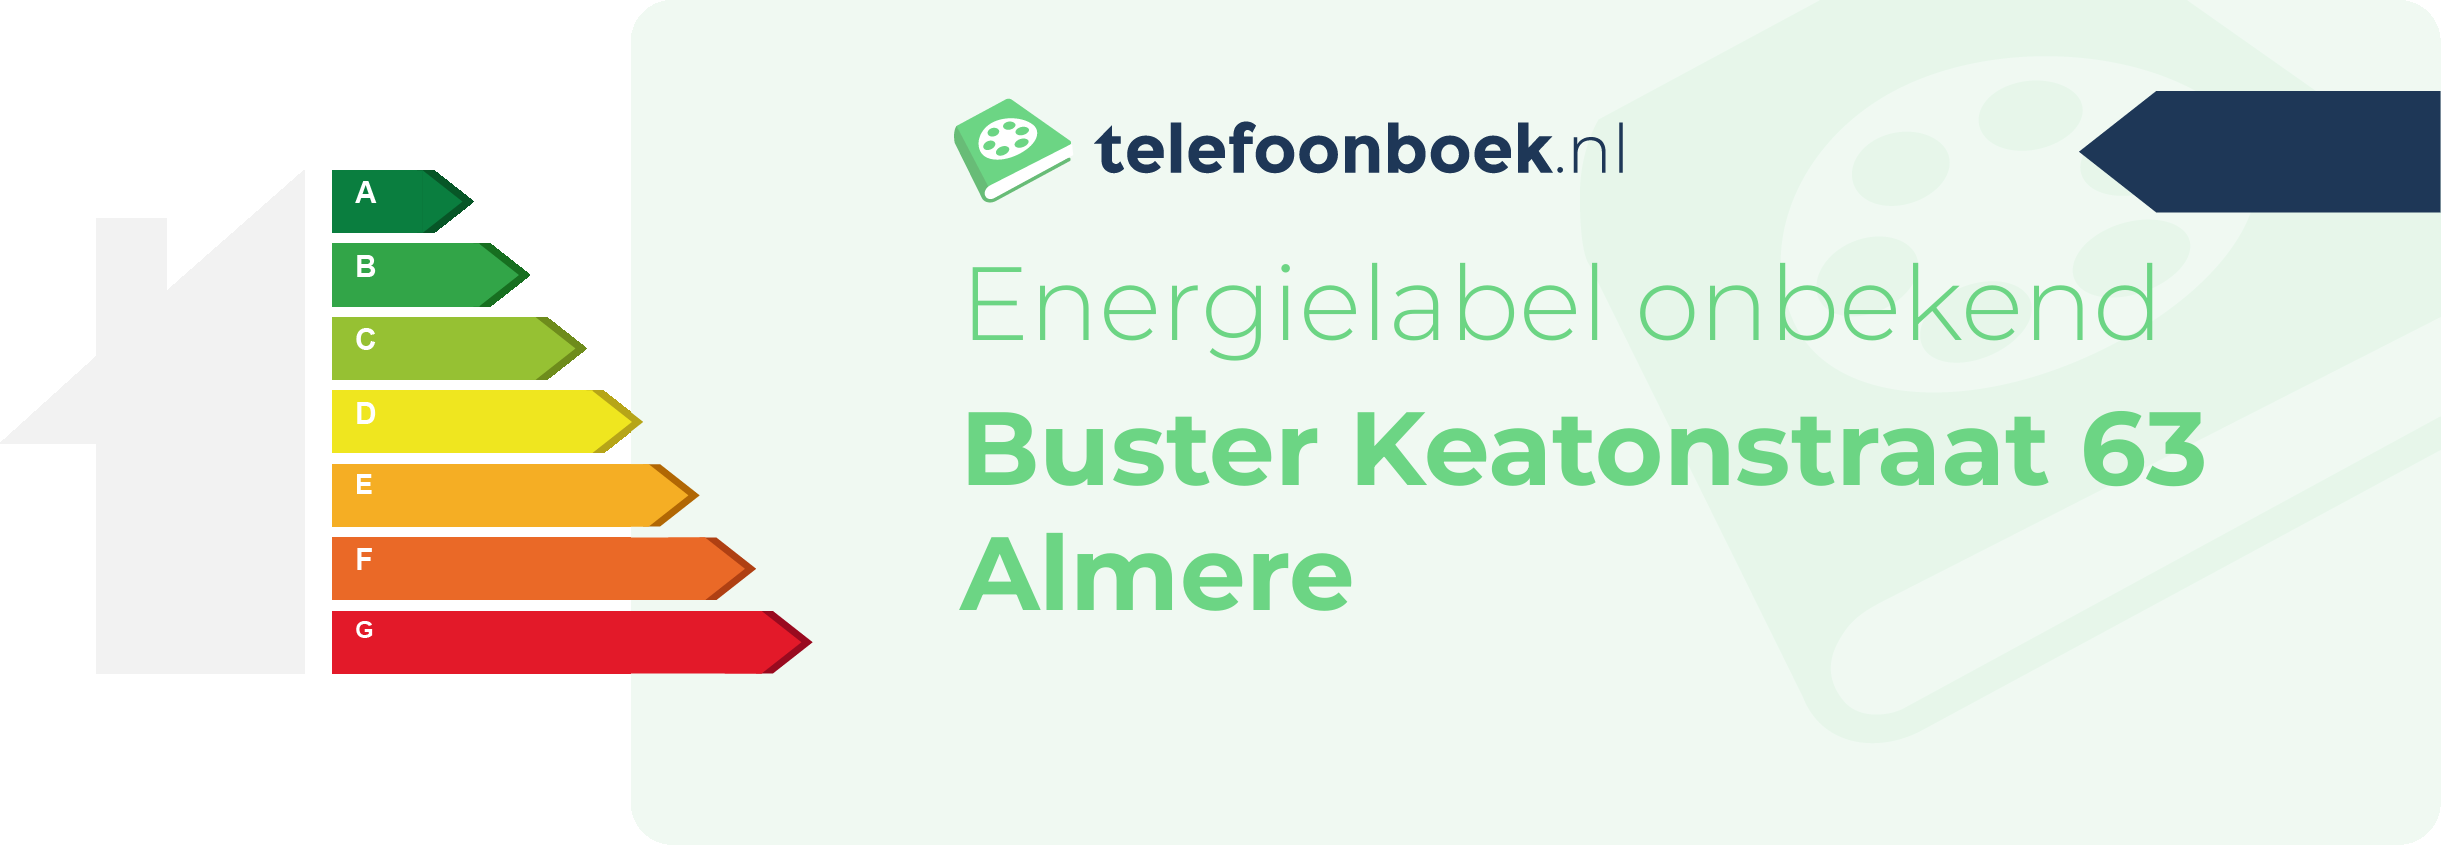 Energielabel Buster Keatonstraat 63 Almere